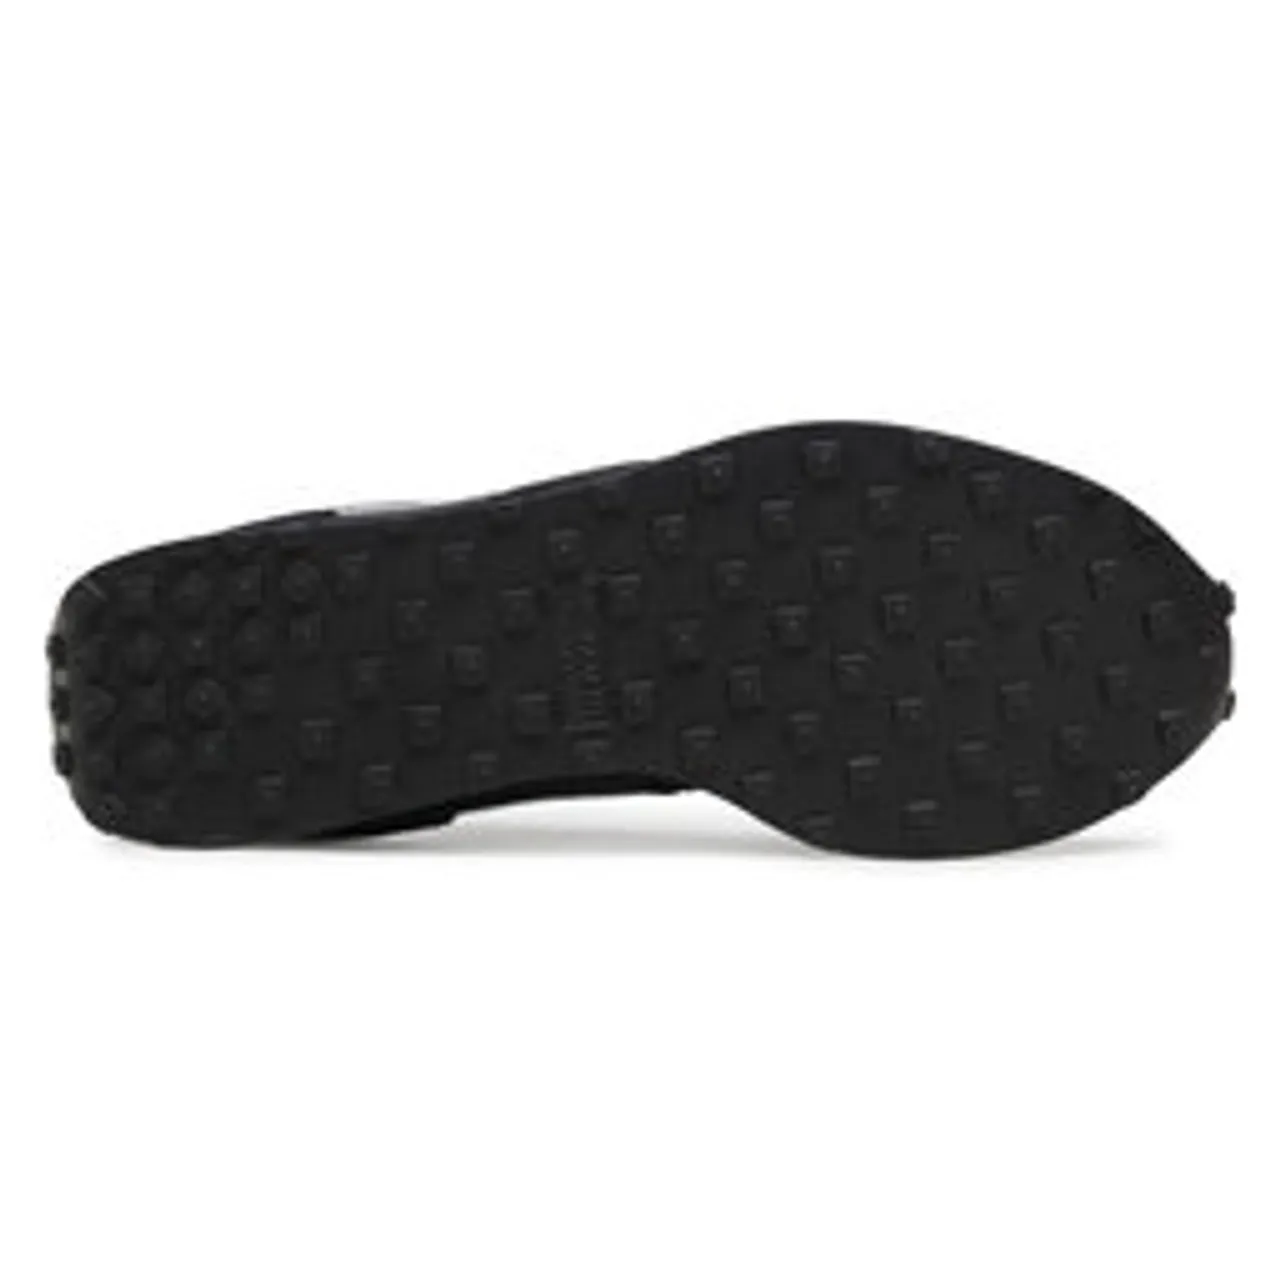 Schuhe Nike Challenger Og CW7645 002 Black/White